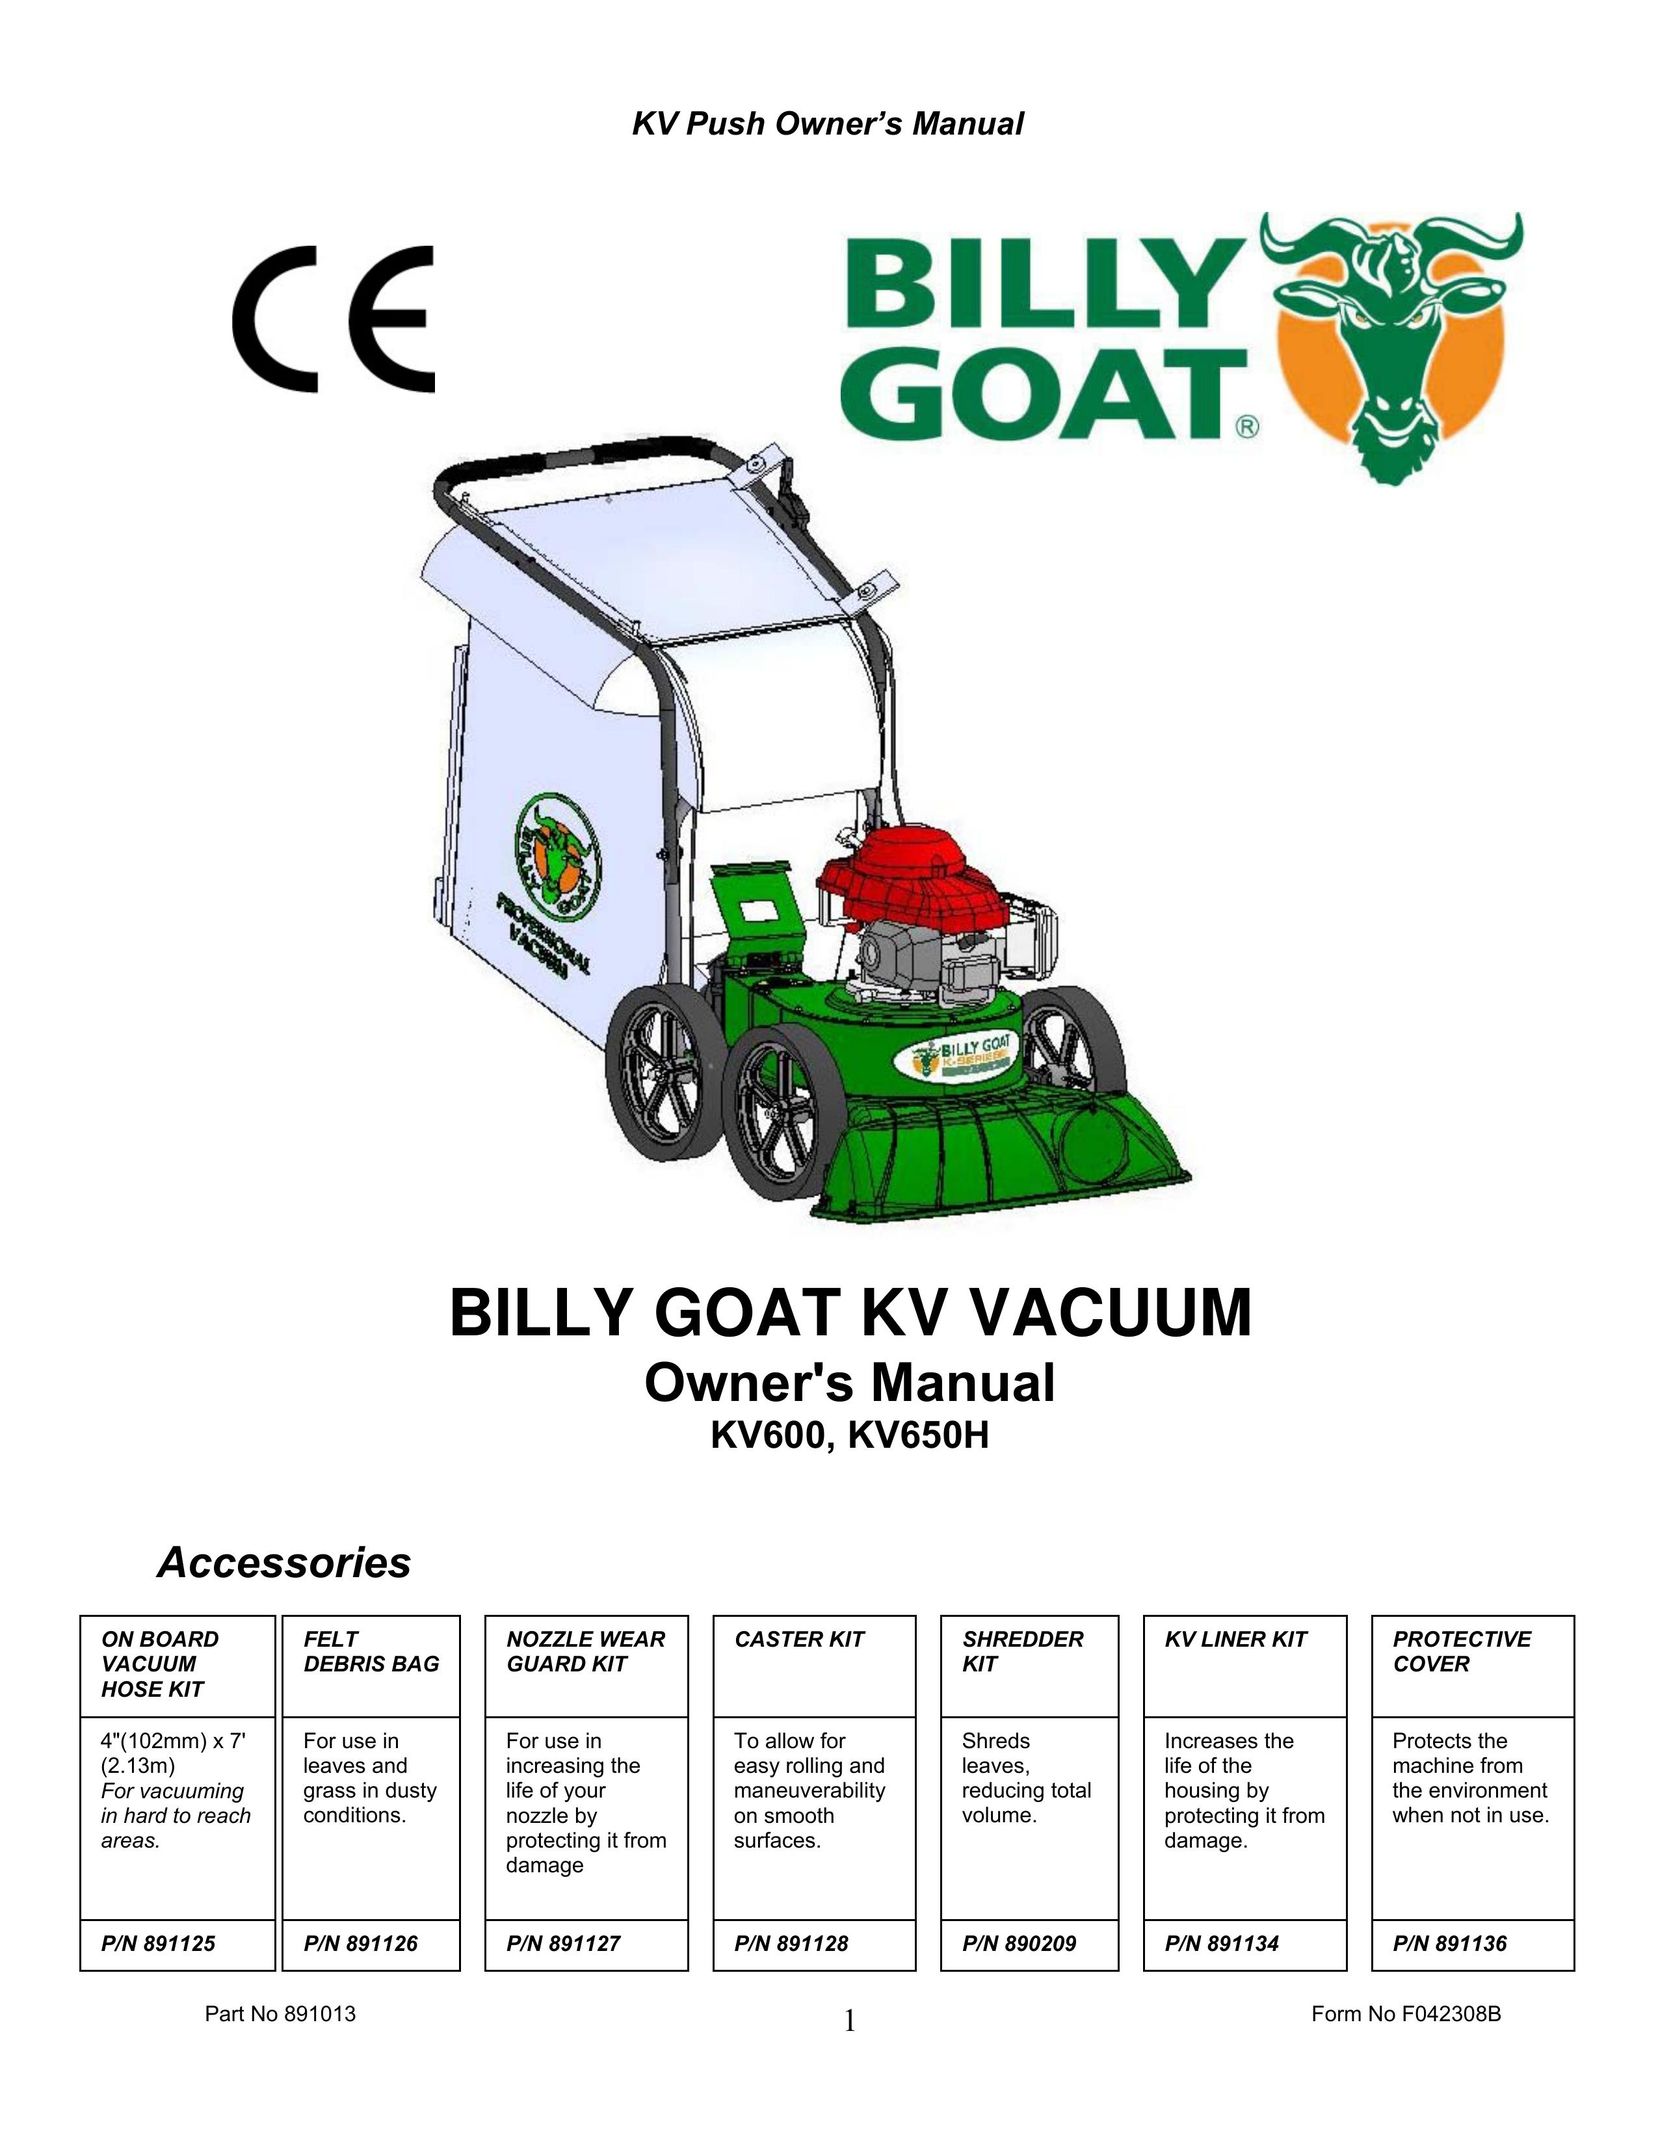 Billy Goat KV600 Vacuum Cleaner User Manual